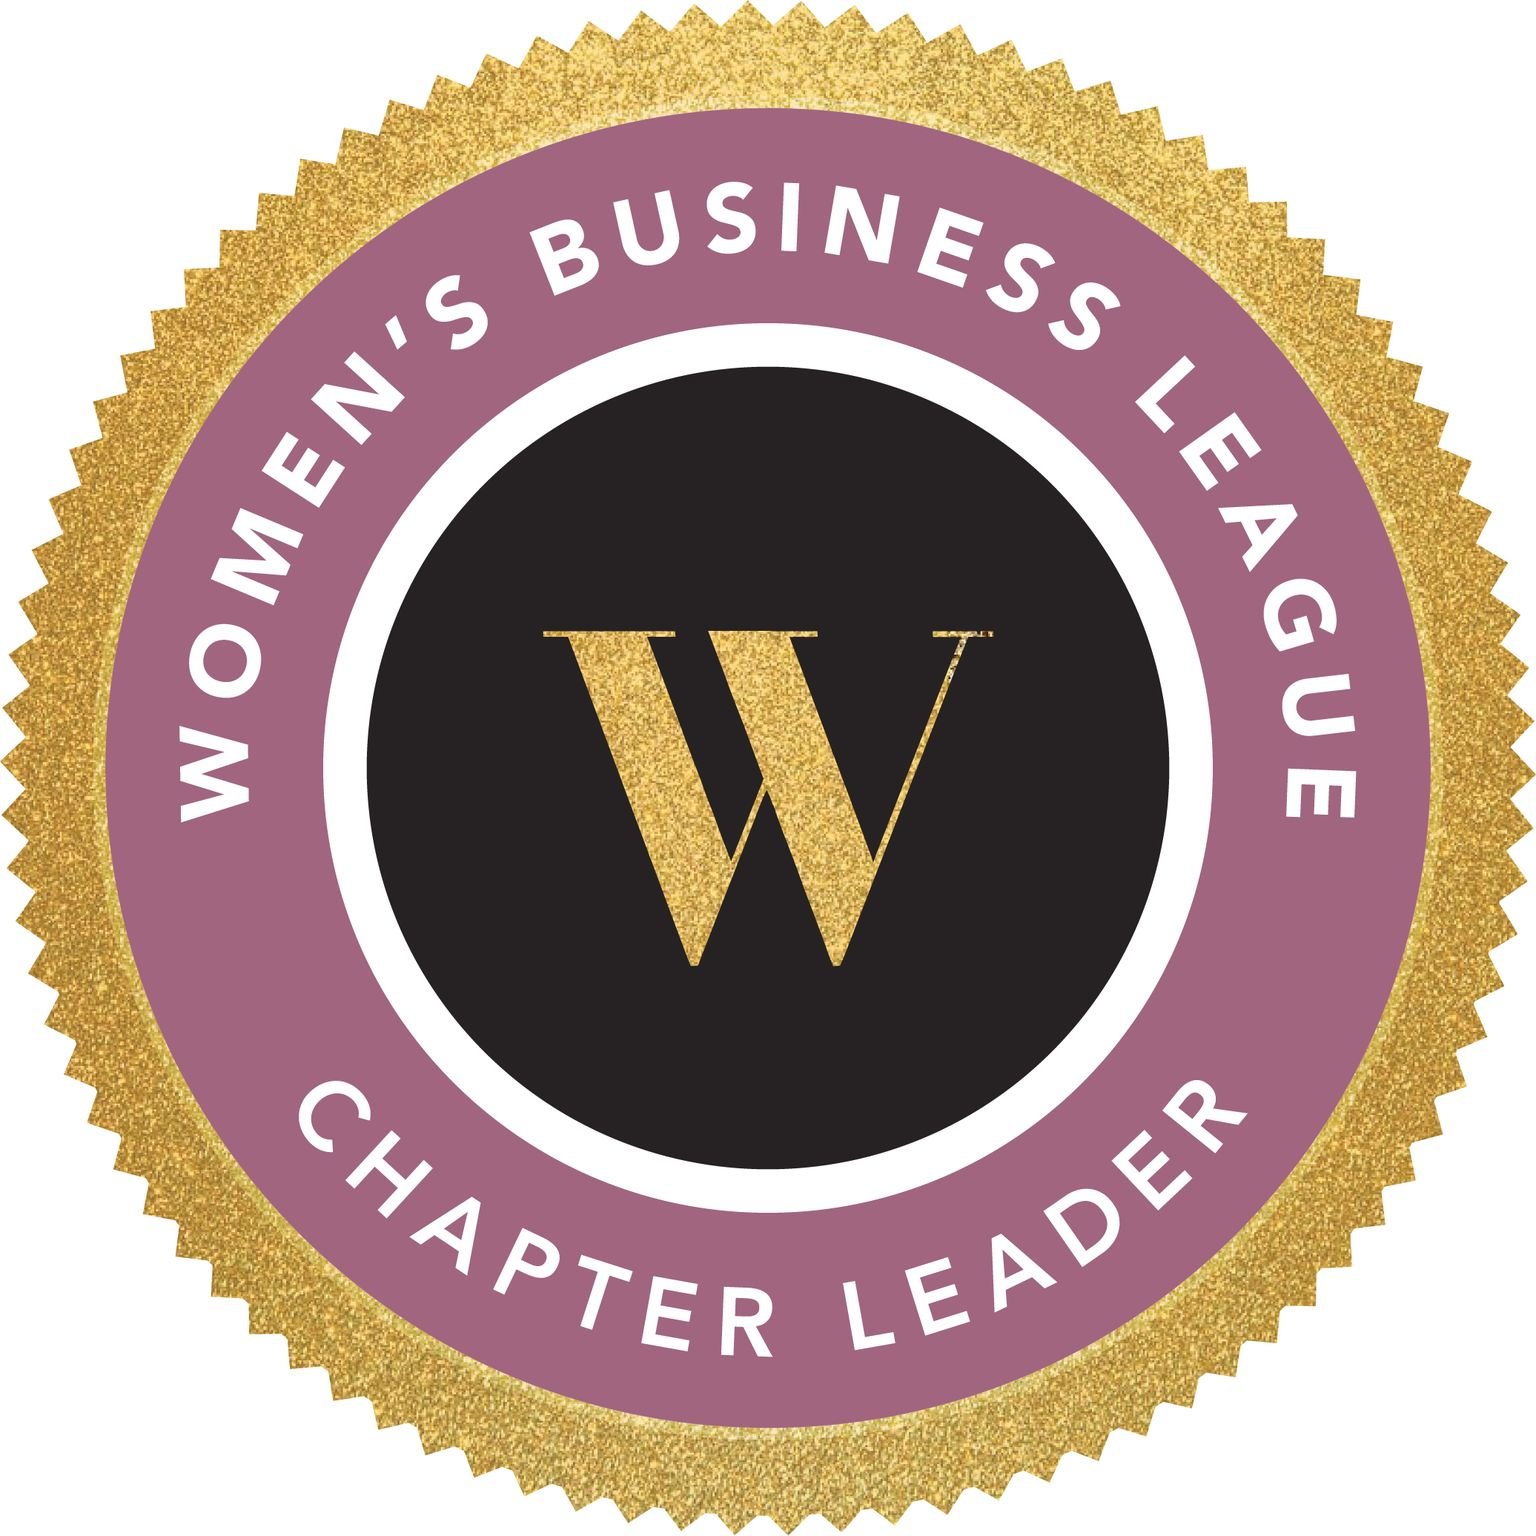 WBL-Chapter-Leader-Badge-1.jpeg